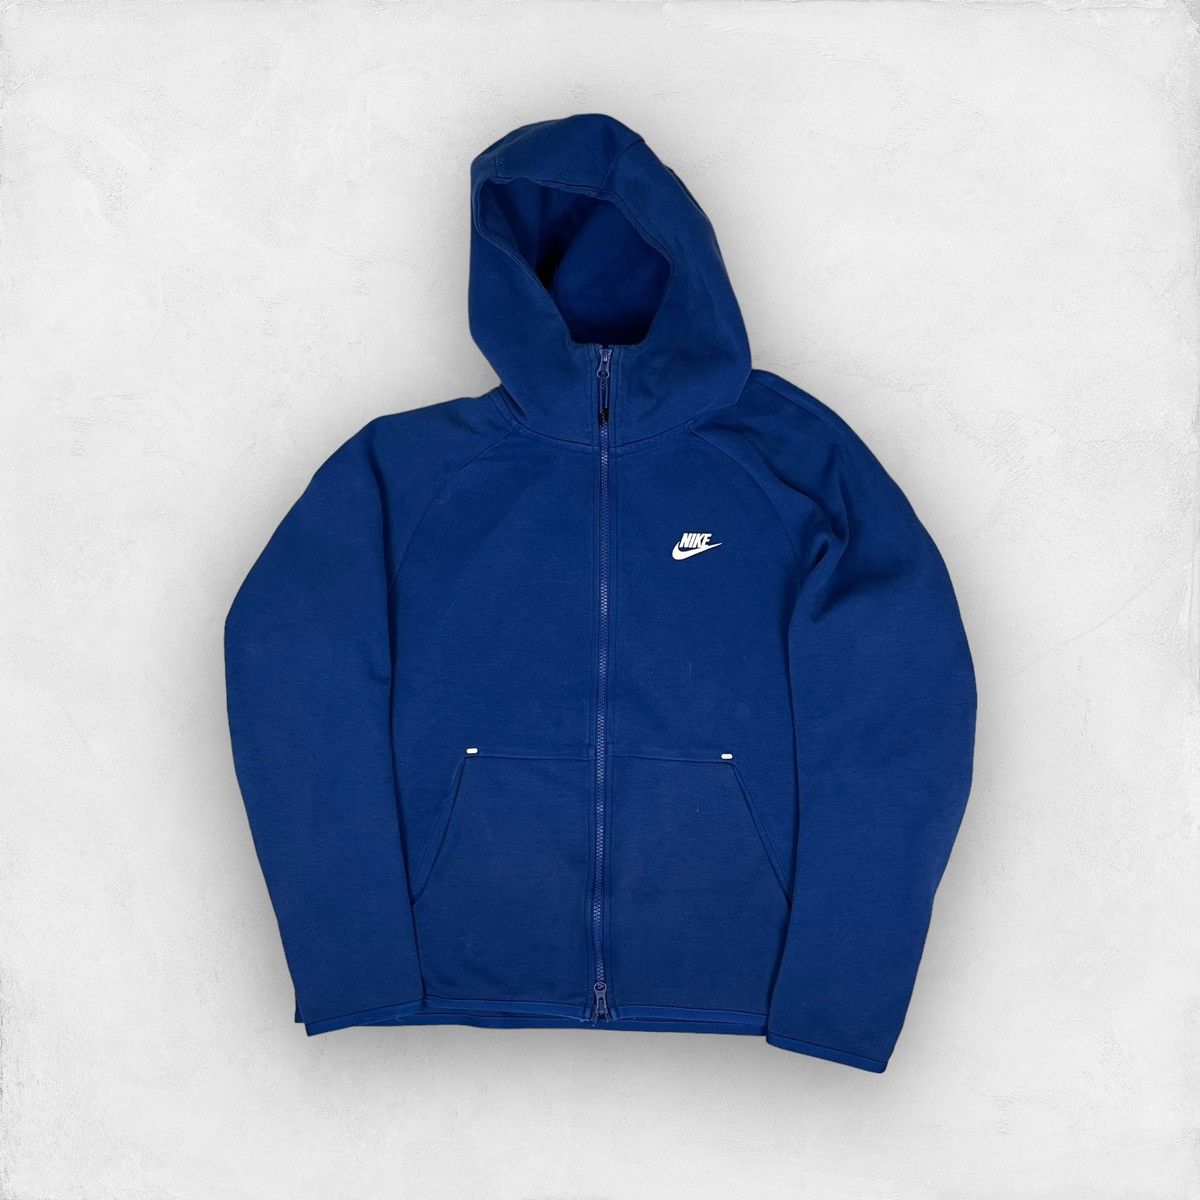 Nike Nike Tech Fleece Zip-up Hoodie Sweatshirt | Grailed